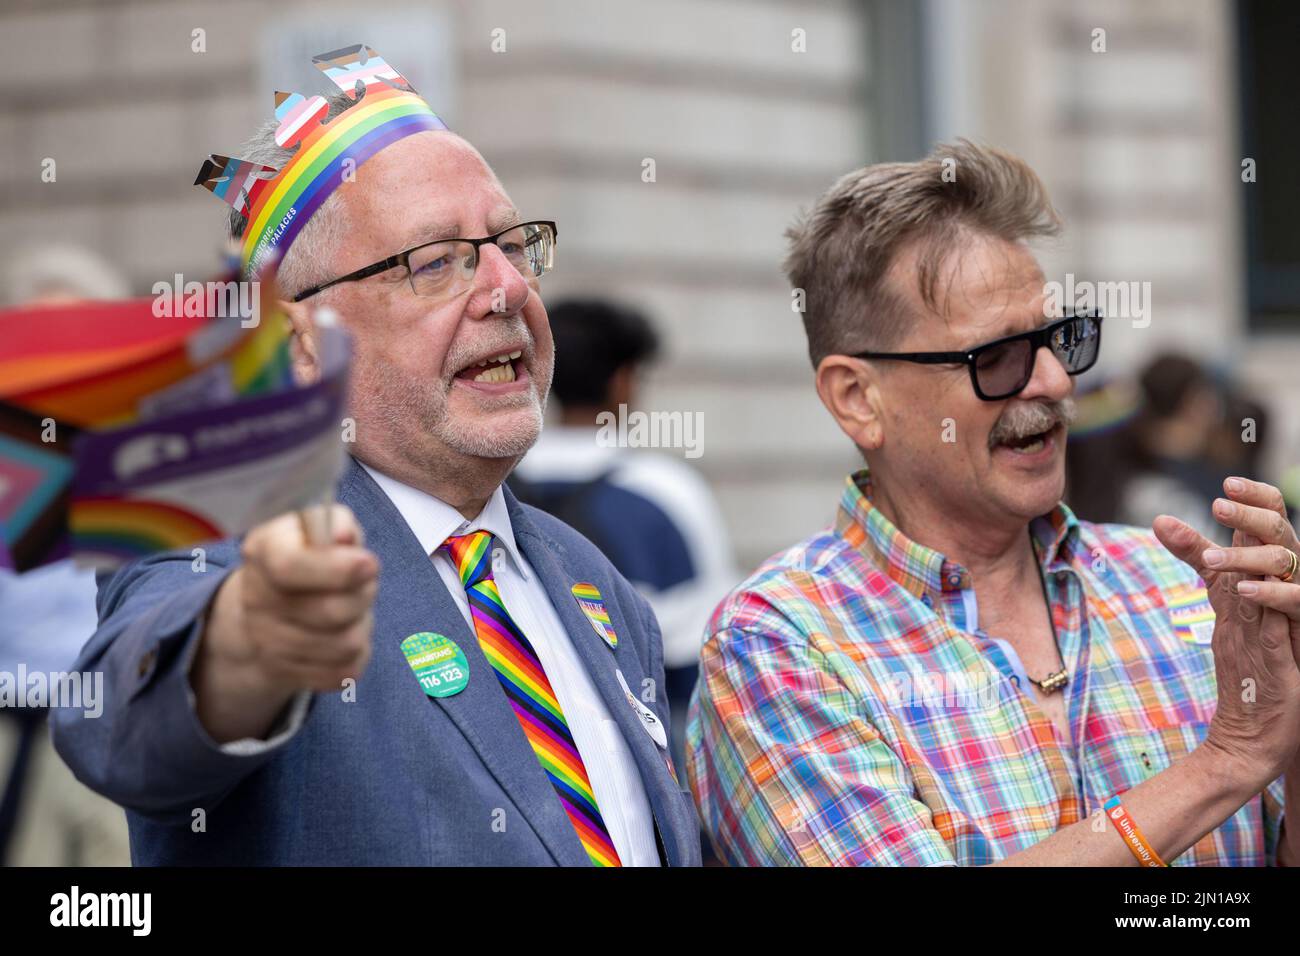 Les foules sont dans les rues de Londres, Piccadilly à Pride London 2022. La marche annuelle est une célébration pour la communauté lesbienne, gay, bi-sexuelle, trans Banque D'Images